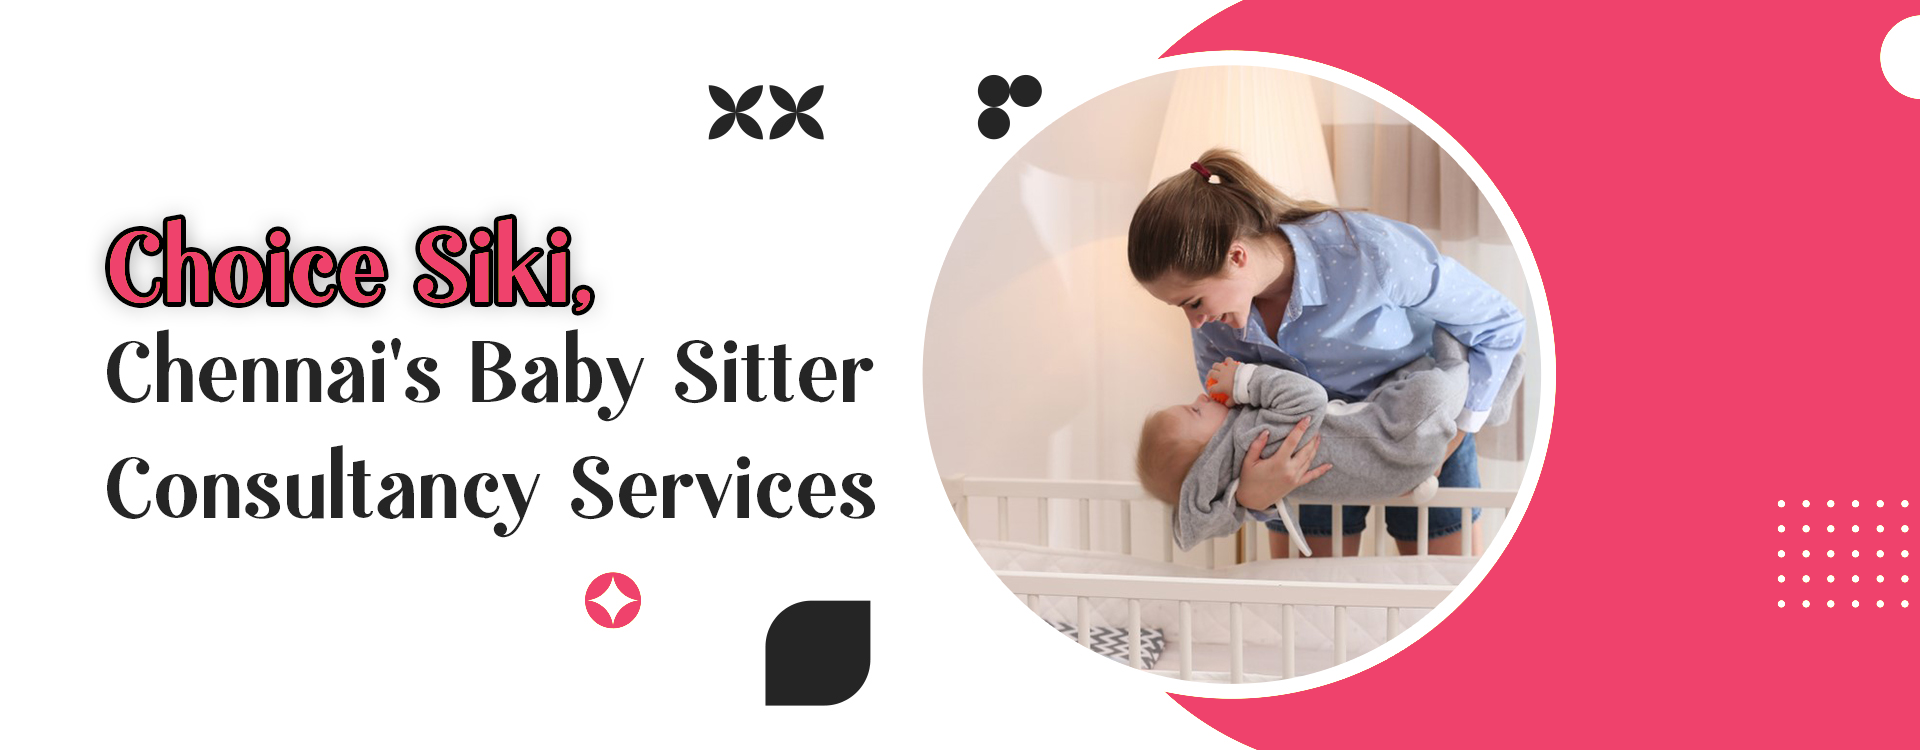 babysitter services in chennai